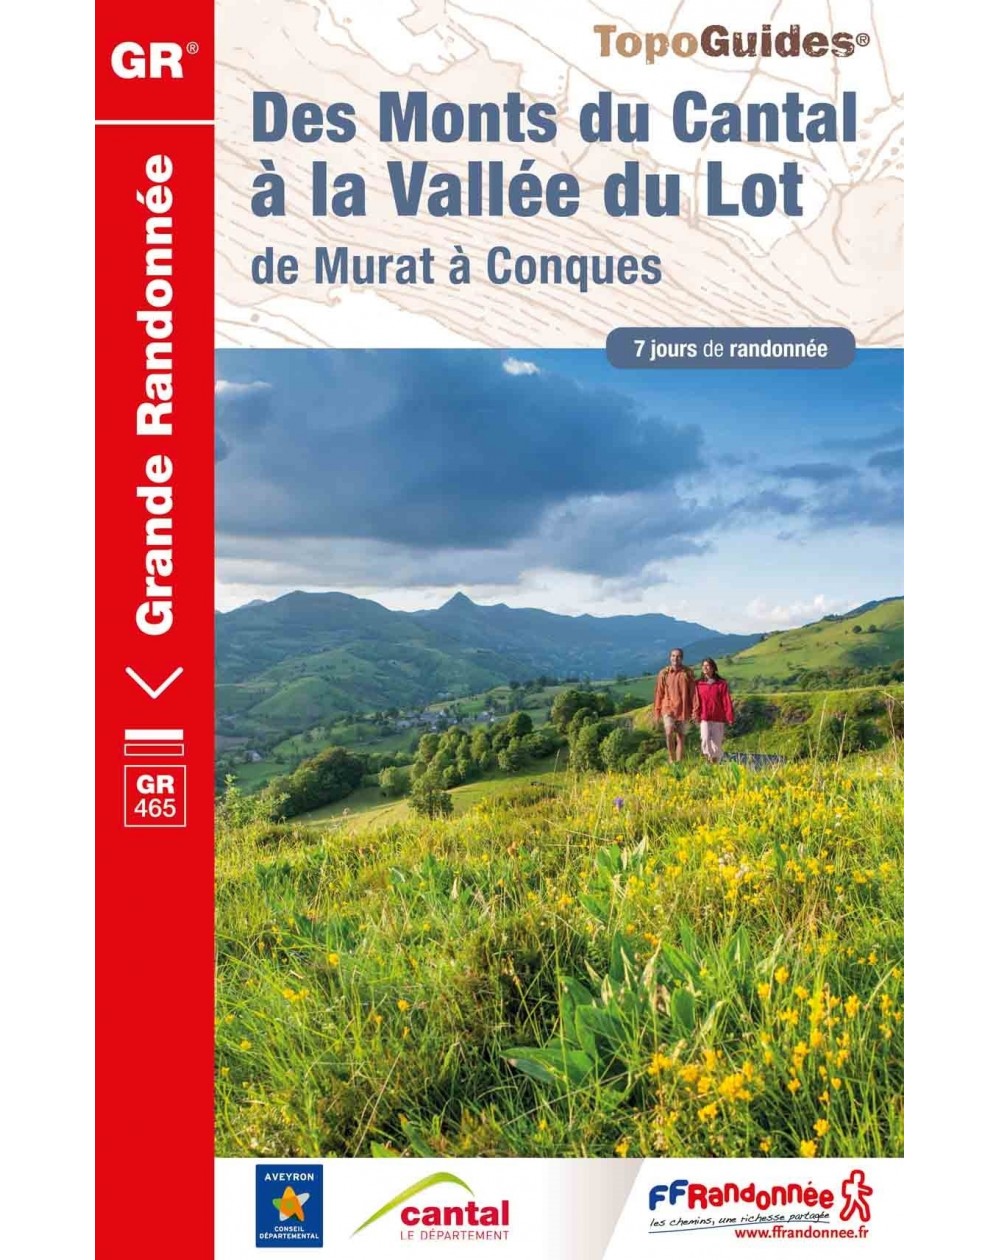 GR465- Monts du Cantal à la Vallée du Lot | Topoguide FFRP